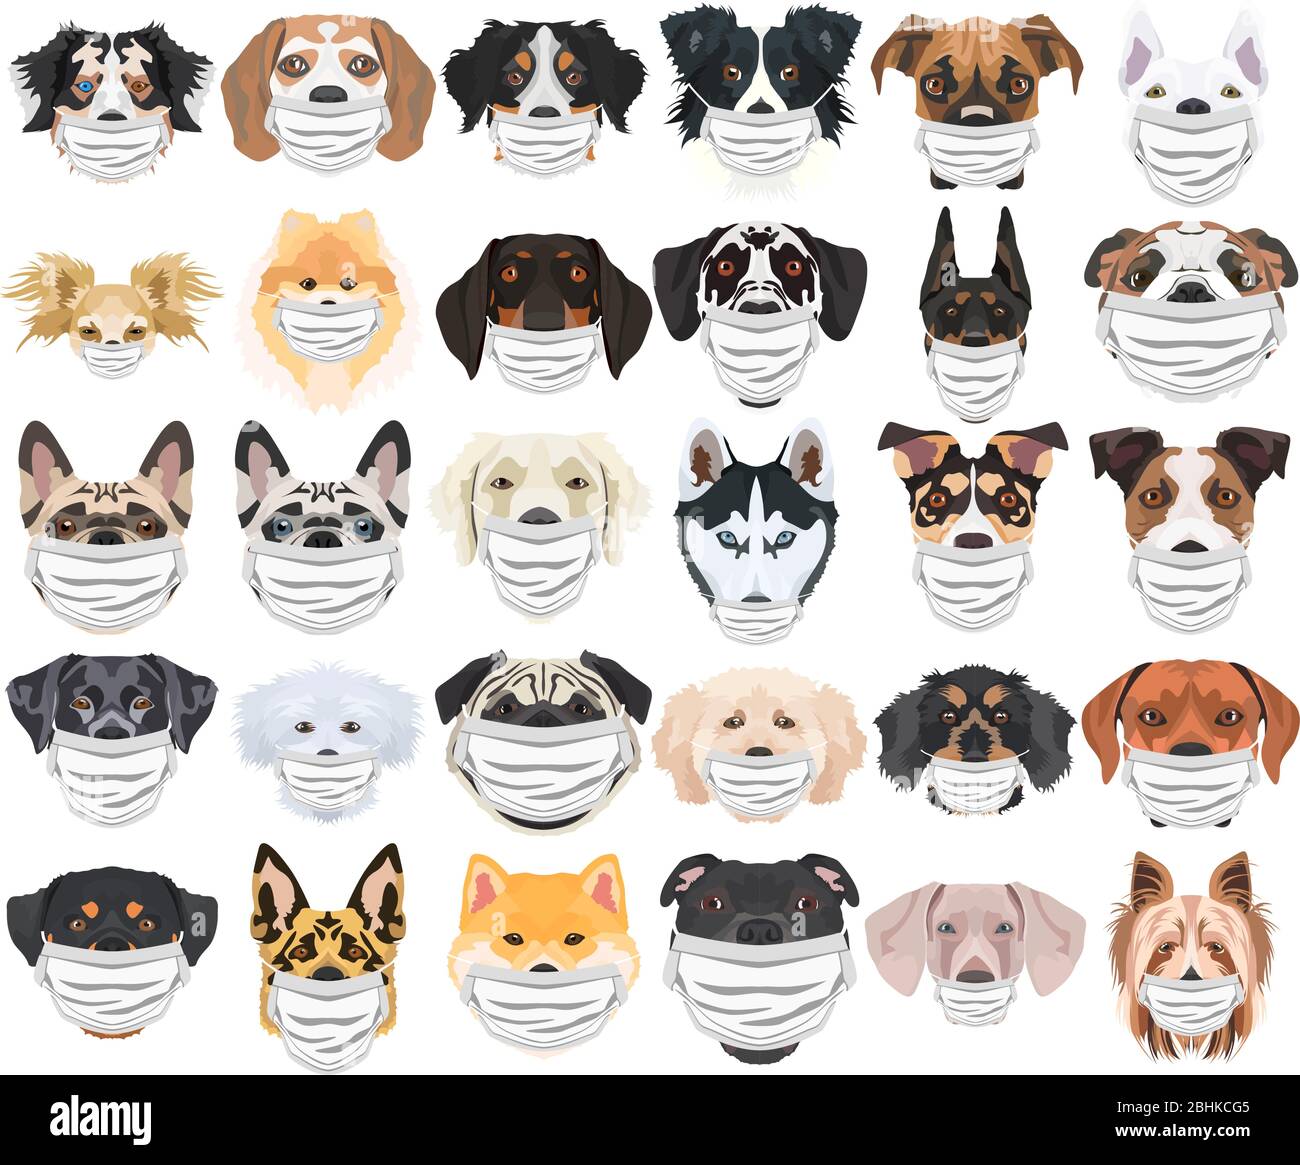 Illustration und Satz von Hunden mit Atemschutzmaske. Zu diesem Zeitpunkt der Pandemie ist das Design eine schöne Grafik für Fans von Hunden. Stock Vektor